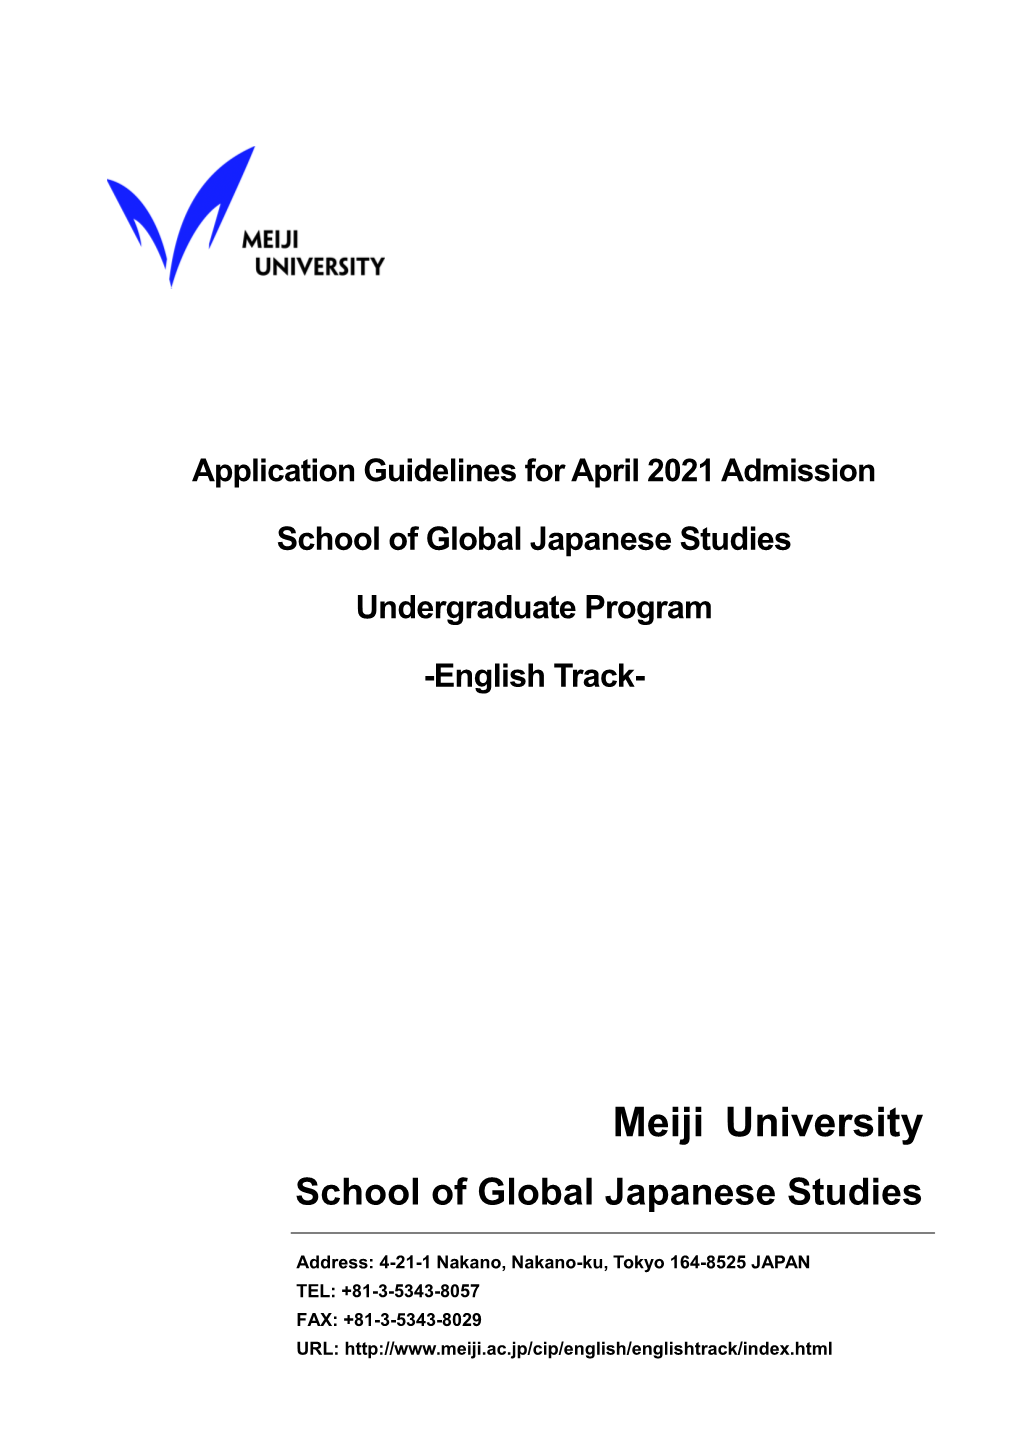 Meiji University School of Global Japanese Studies